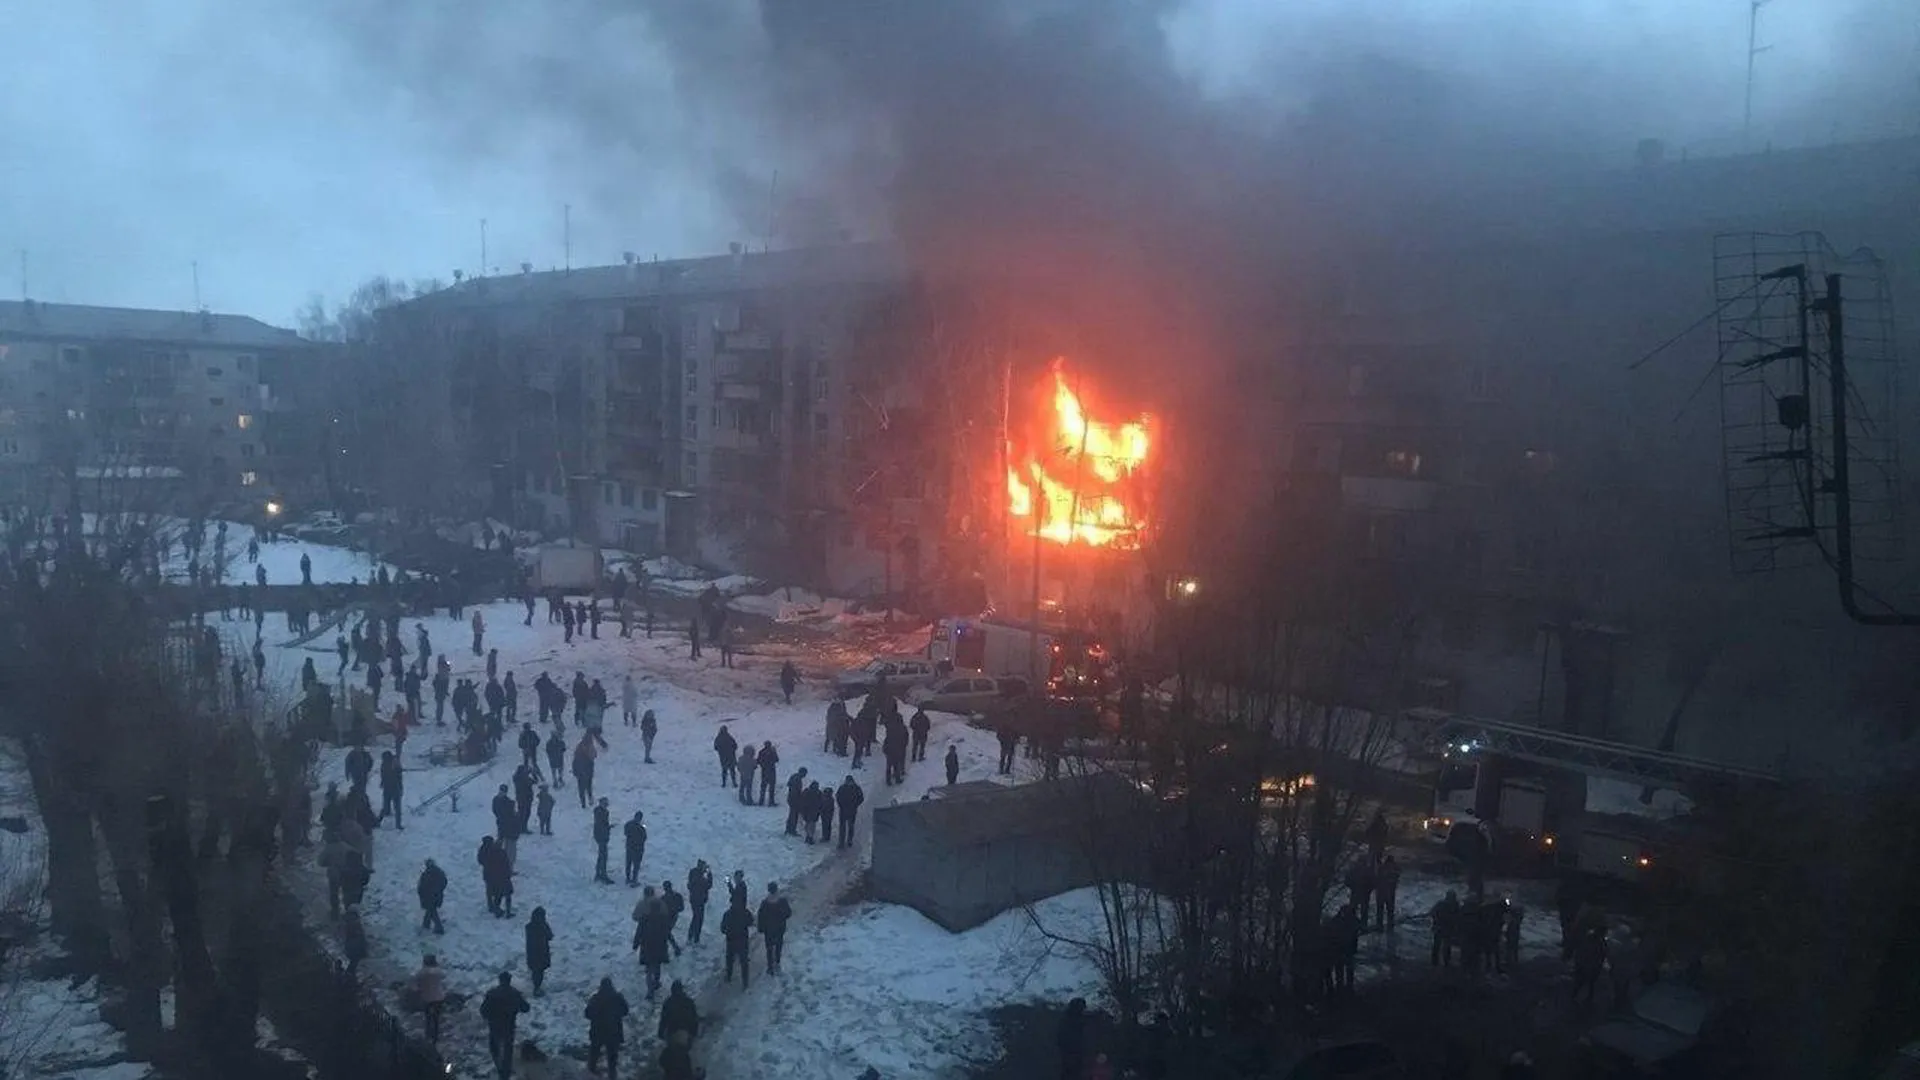 Взрыв газа произошел в жилом доме в Магнитогорске